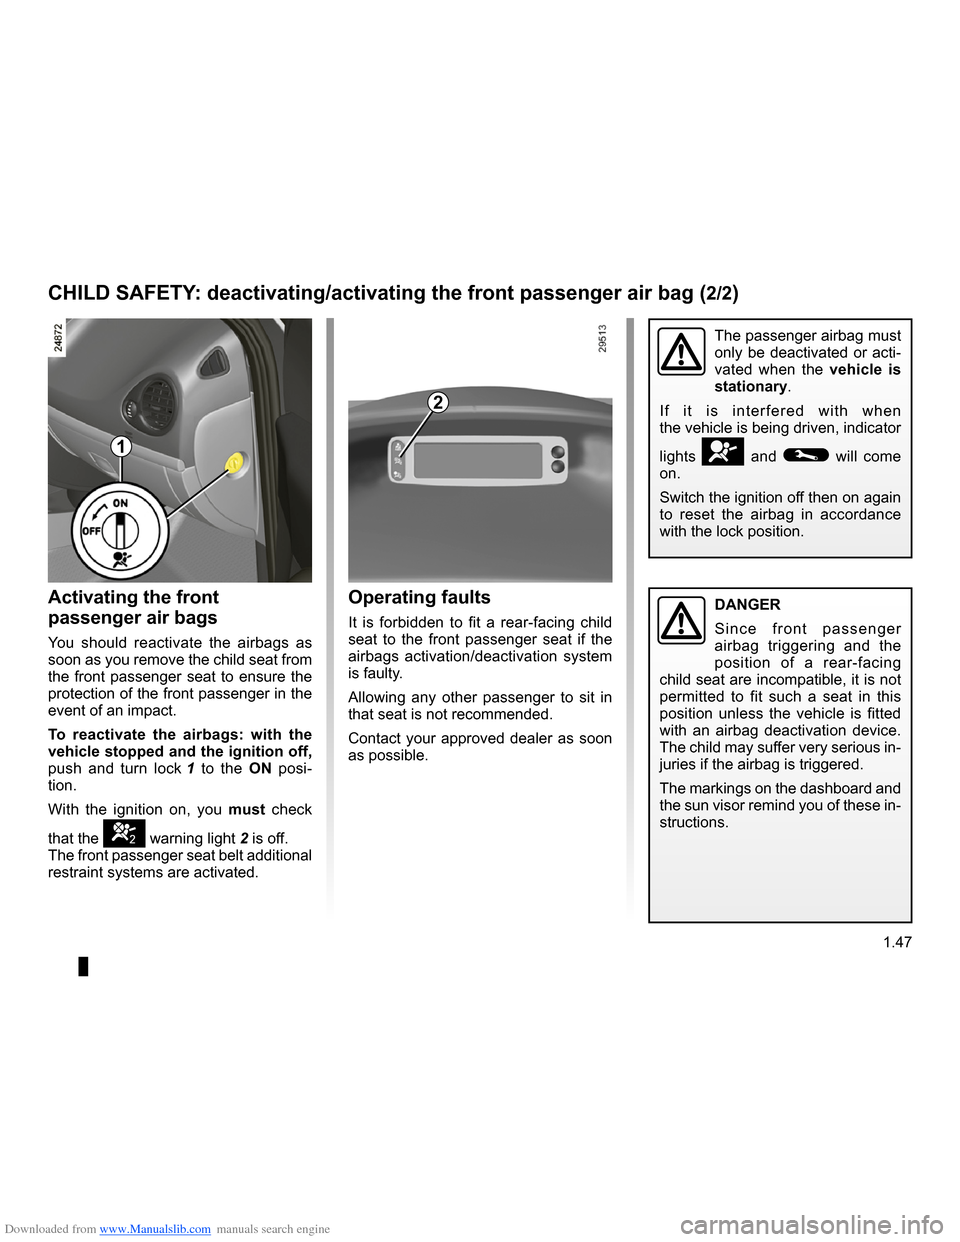 RENAULT CLIO 2009 X85 / 3.G Workshop Manual Downloaded from www.Manualslib.com manuals search engine 
air bagactivating the front passenger air bags ............(current page)
JauneNoirNoir texte
1.47
ENG_UD10530_1Sécurité enfants : désactiv